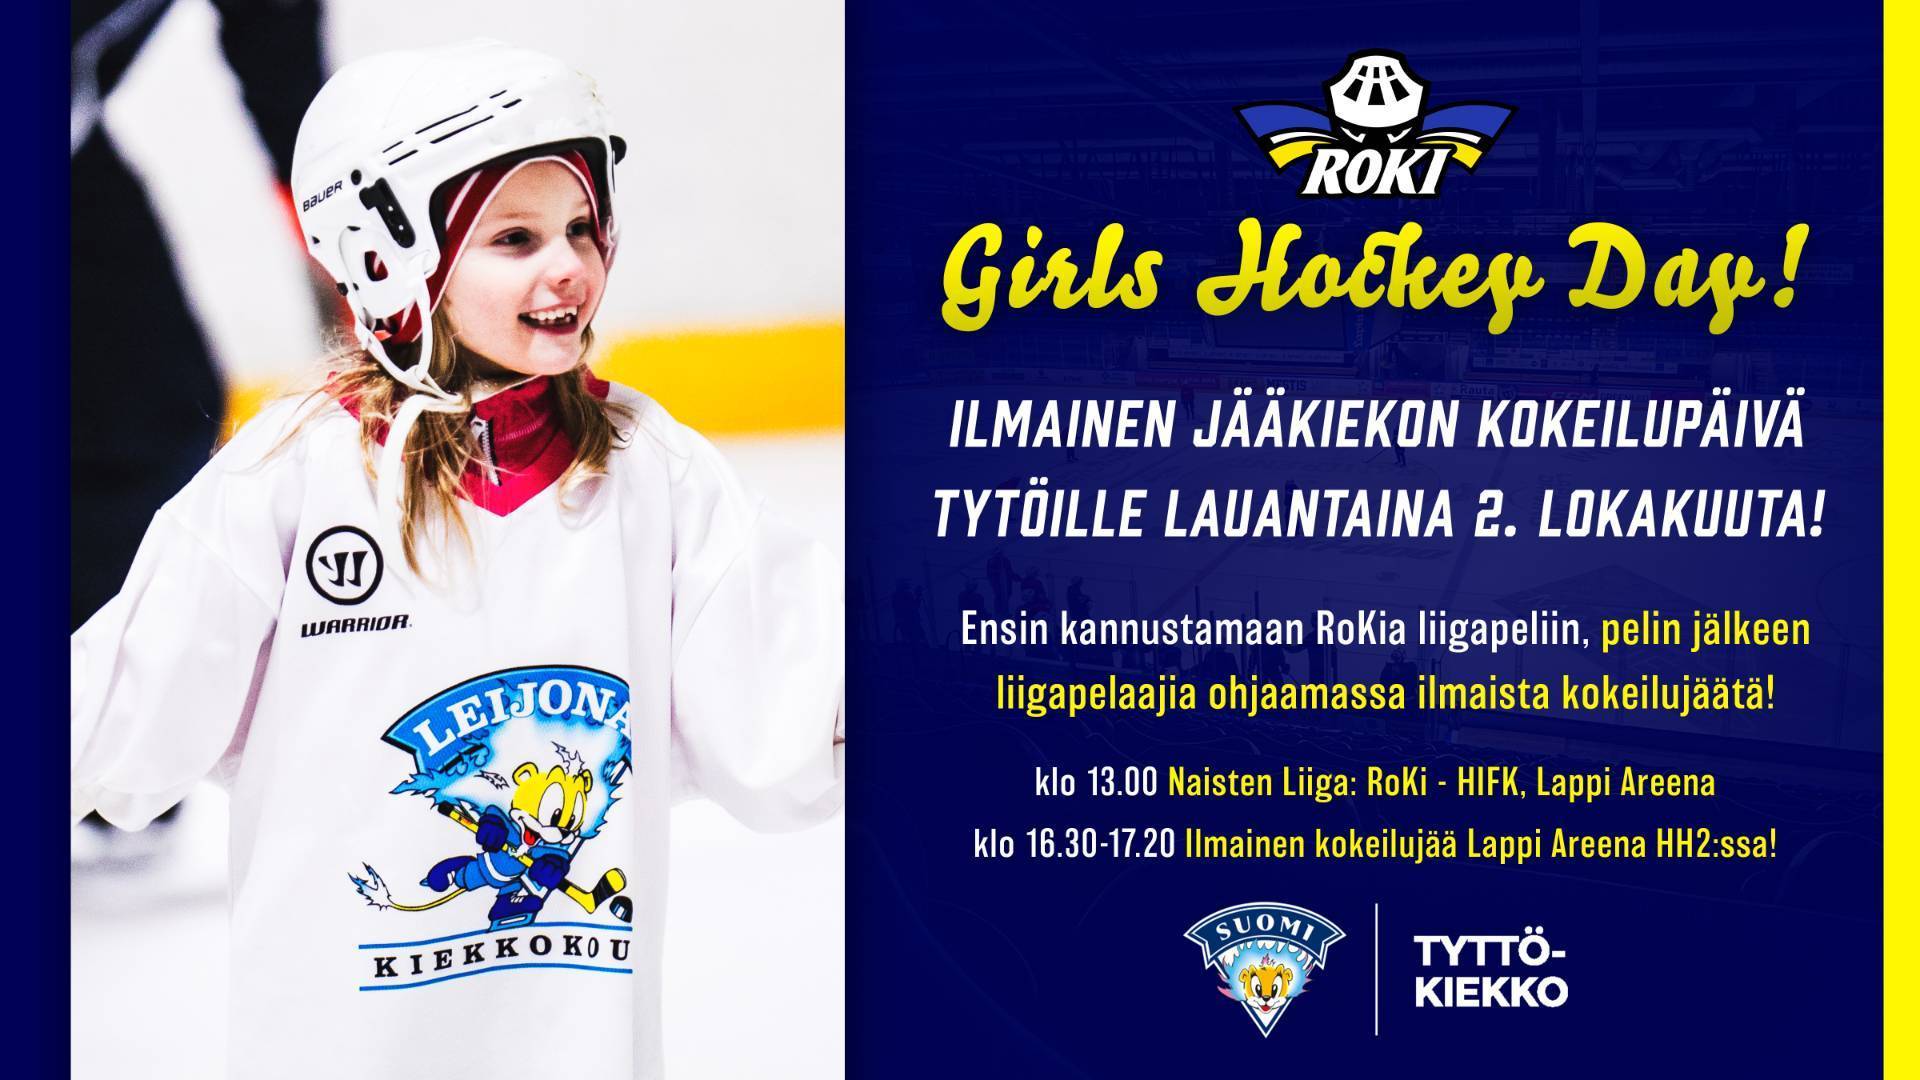 Girls Hockey Day - Ilmainen jääkiekon kokeilupäivä tytöille launtaina 2.10